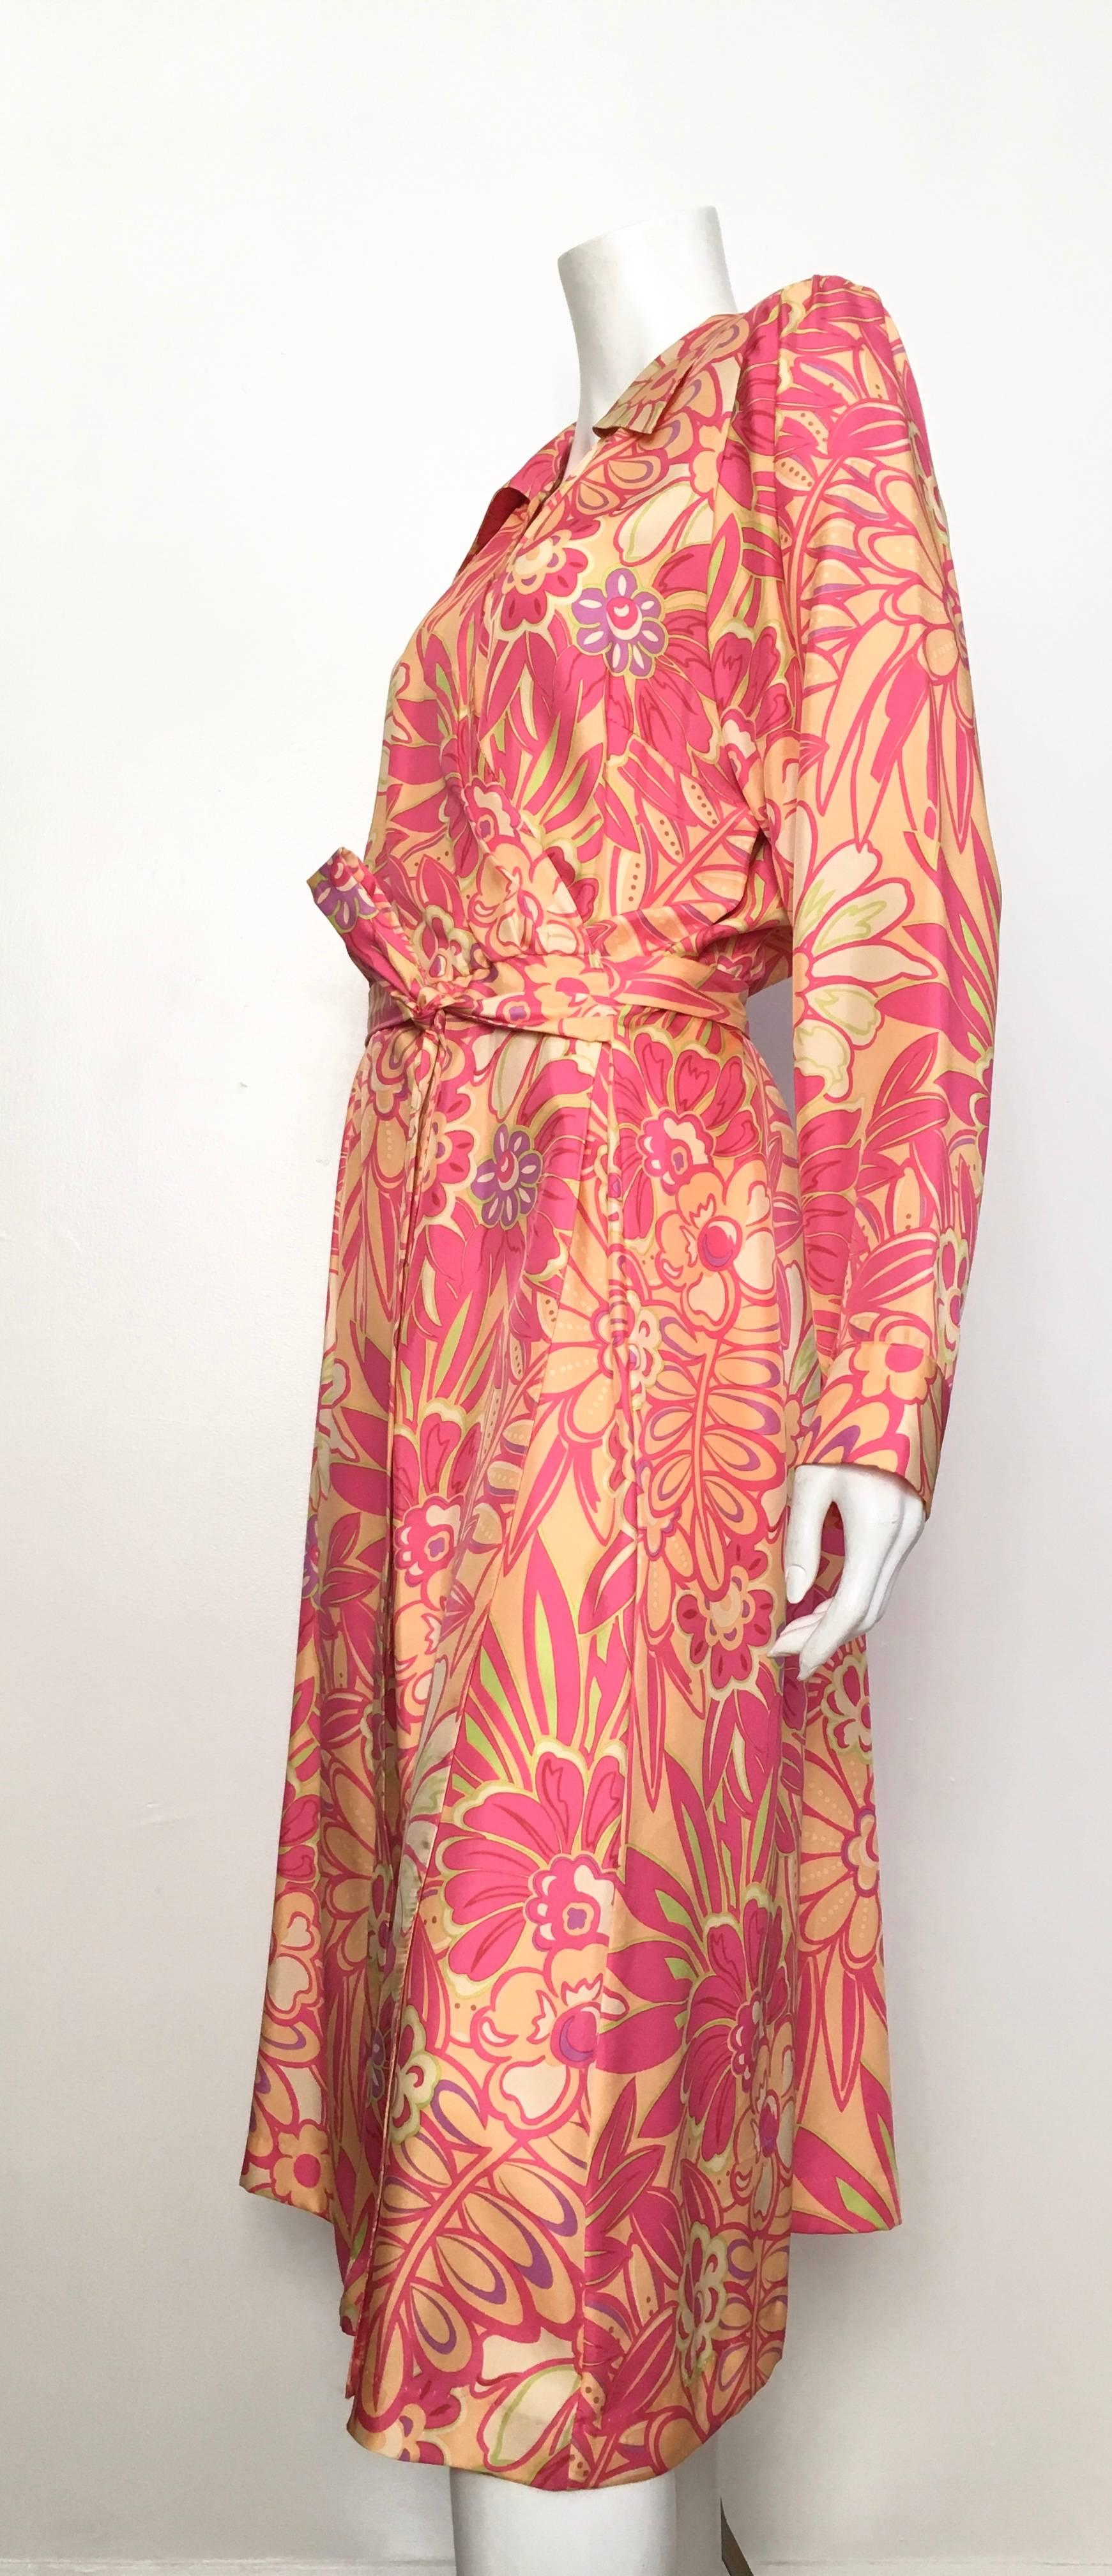 Women's or Men's Bob Mackie Floral Silk Wrap Dress Size 14 / 16.